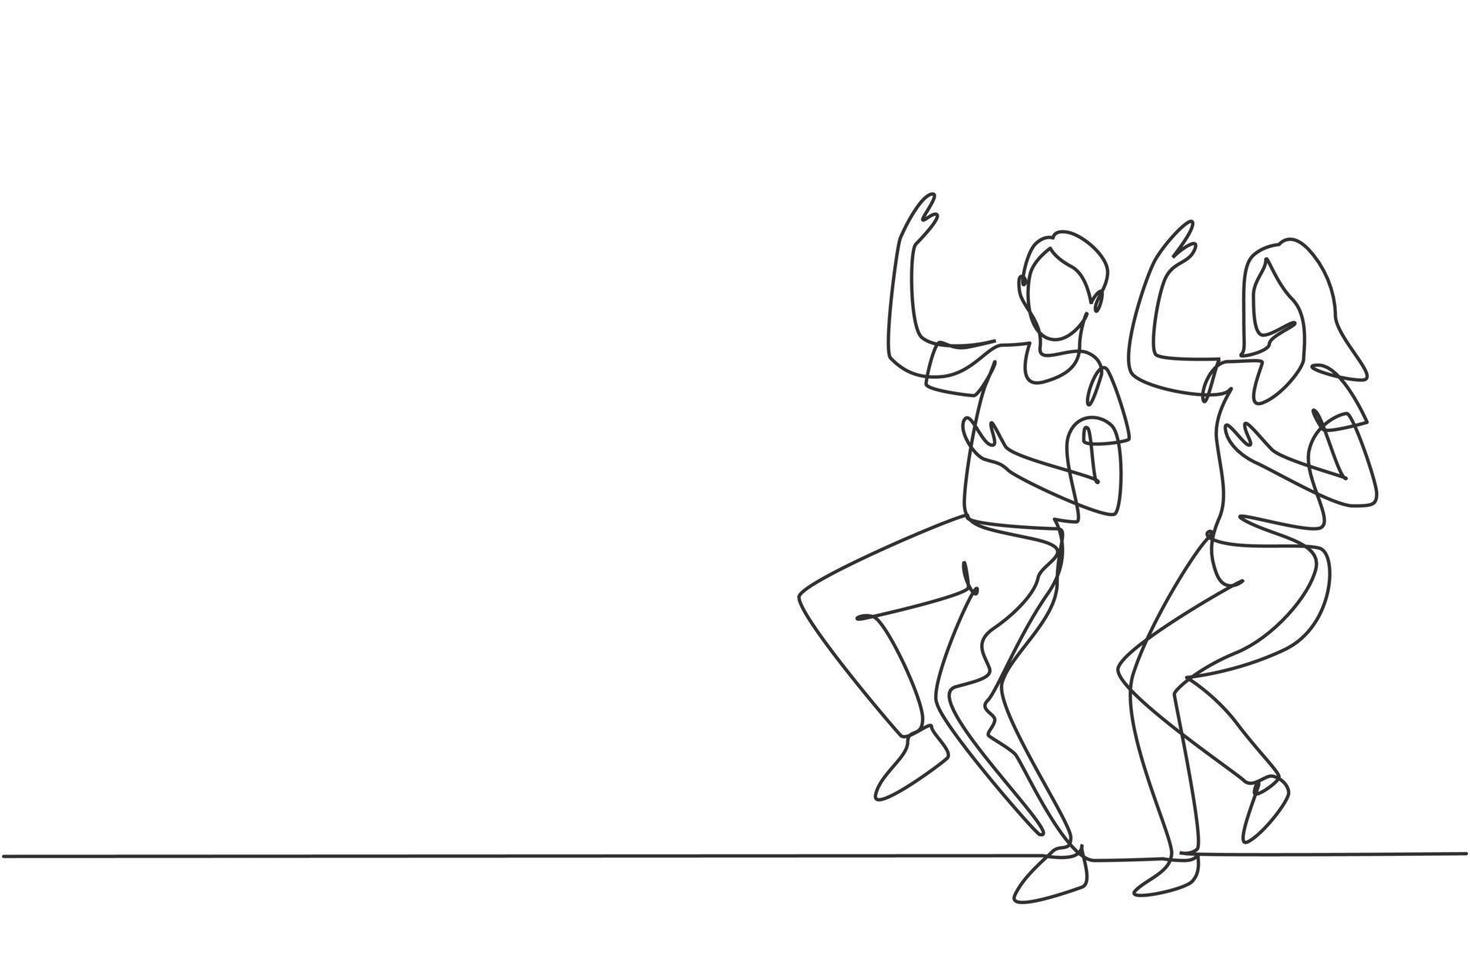 enkele doorlopende lijntekening man en vrouw dansen lindy hop of swing. mannelijke en vrouwelijke personages die dansen op school. gelukkig stel. dynamische één lijn trekken grafisch ontwerp vectorillustratie vector